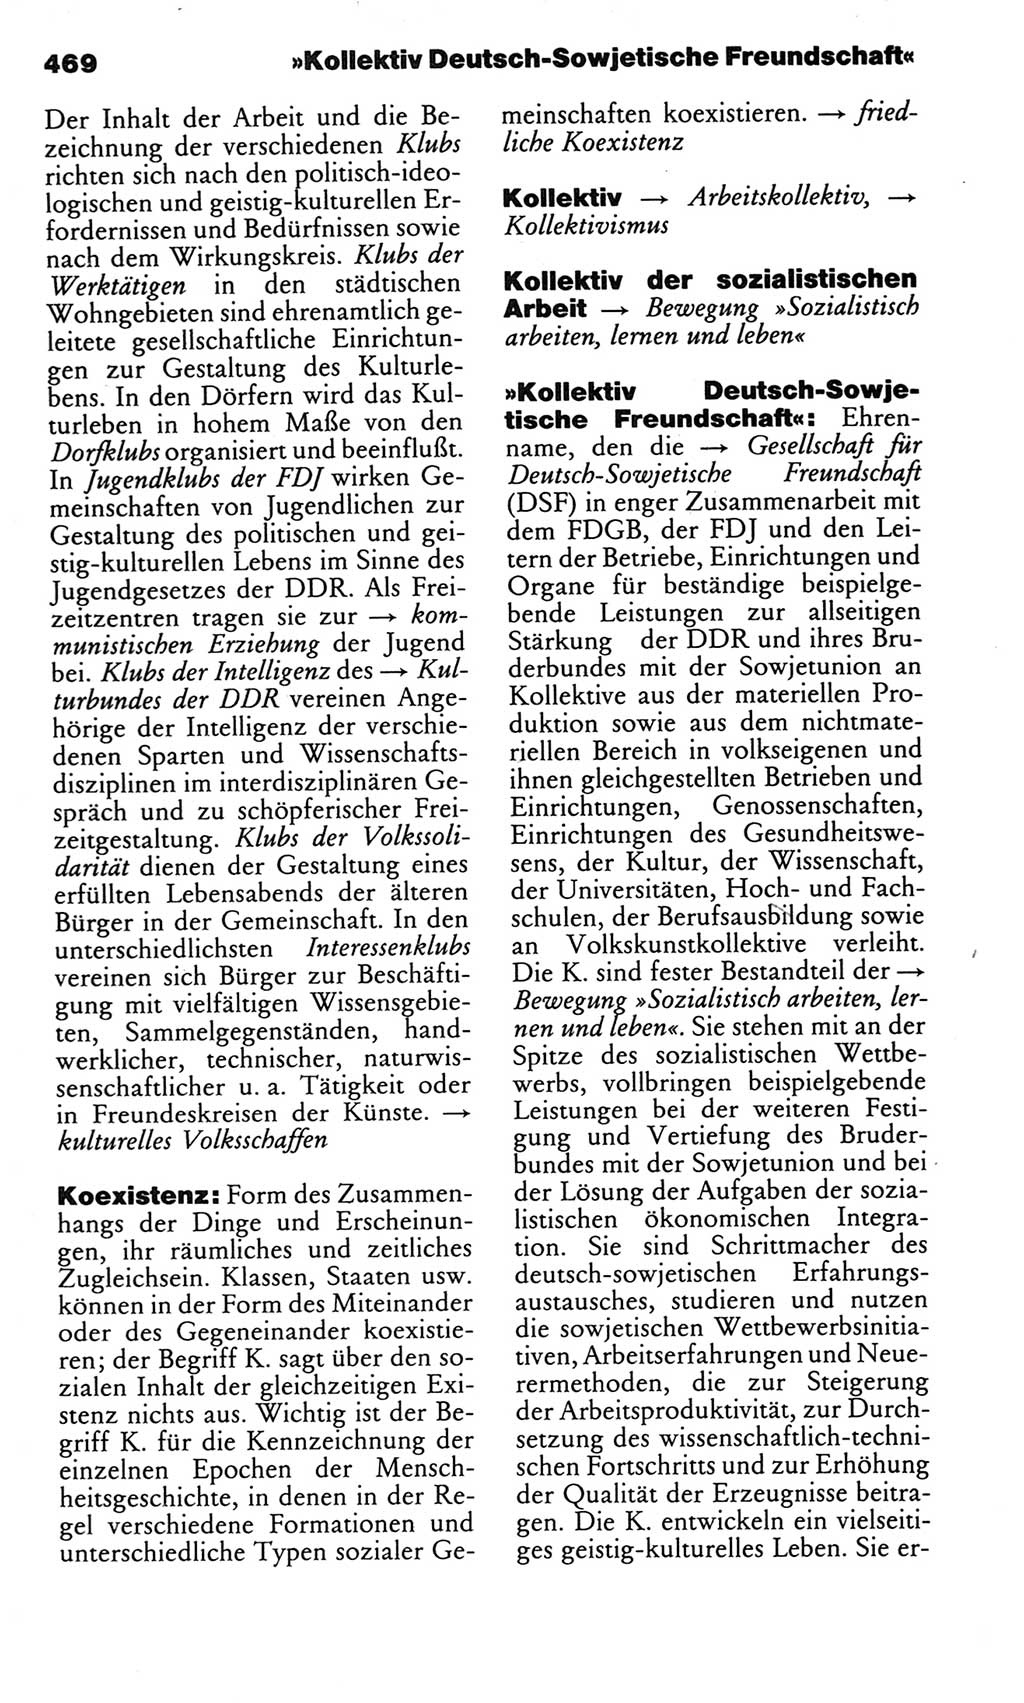 Kleines politisches Wörterbuch [Deutsche Demokratische Republik (DDR)] 1983, Seite 469 (Kl. pol. Wb. DDR 1983, S. 469)